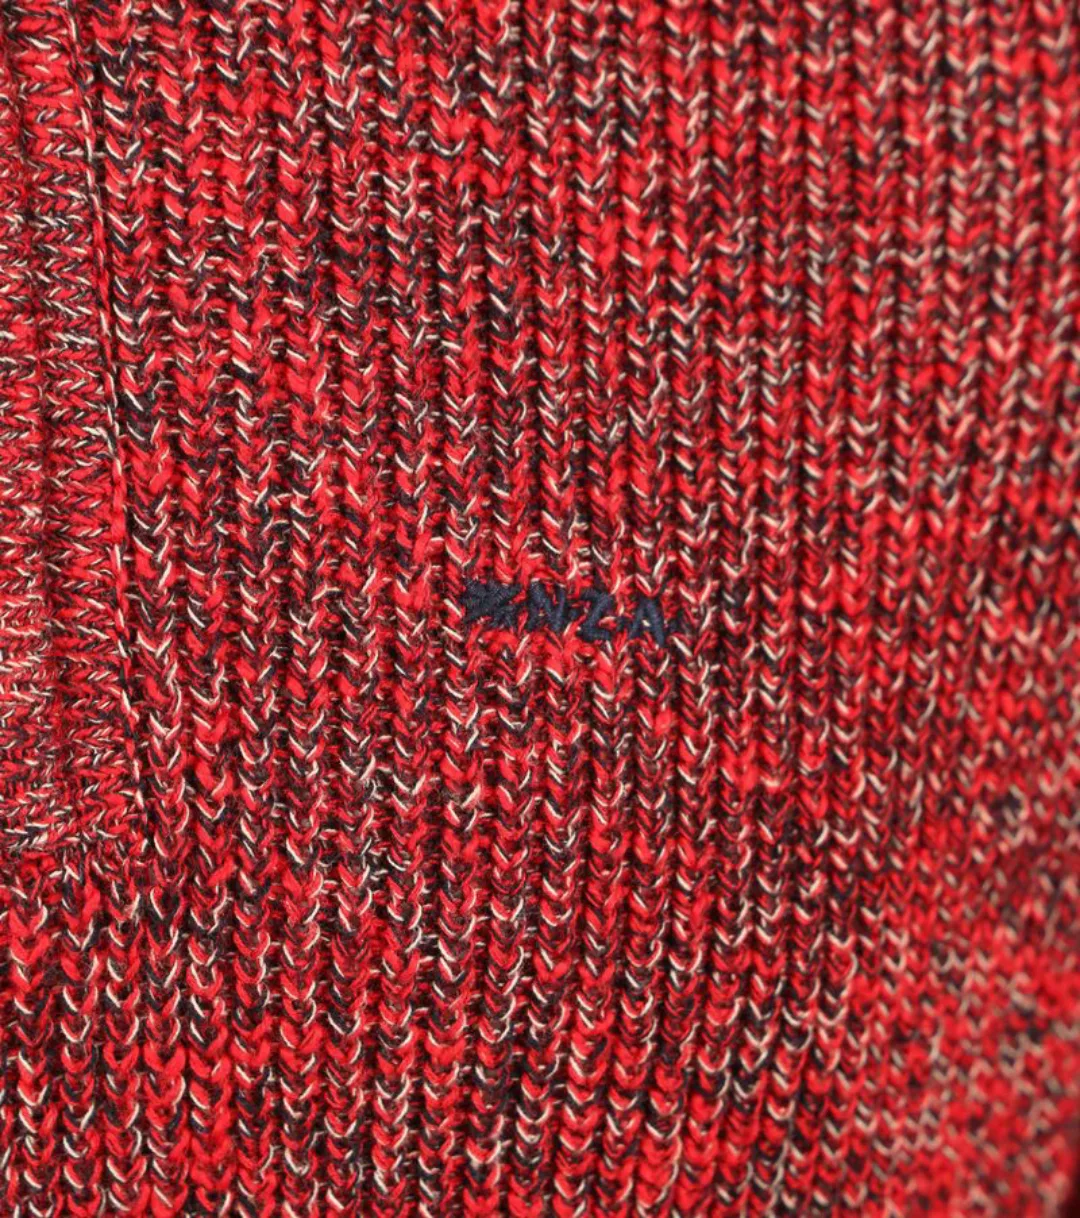 NZA Half Zip Pullover Ngamuwahine Rot - Größe XL günstig online kaufen